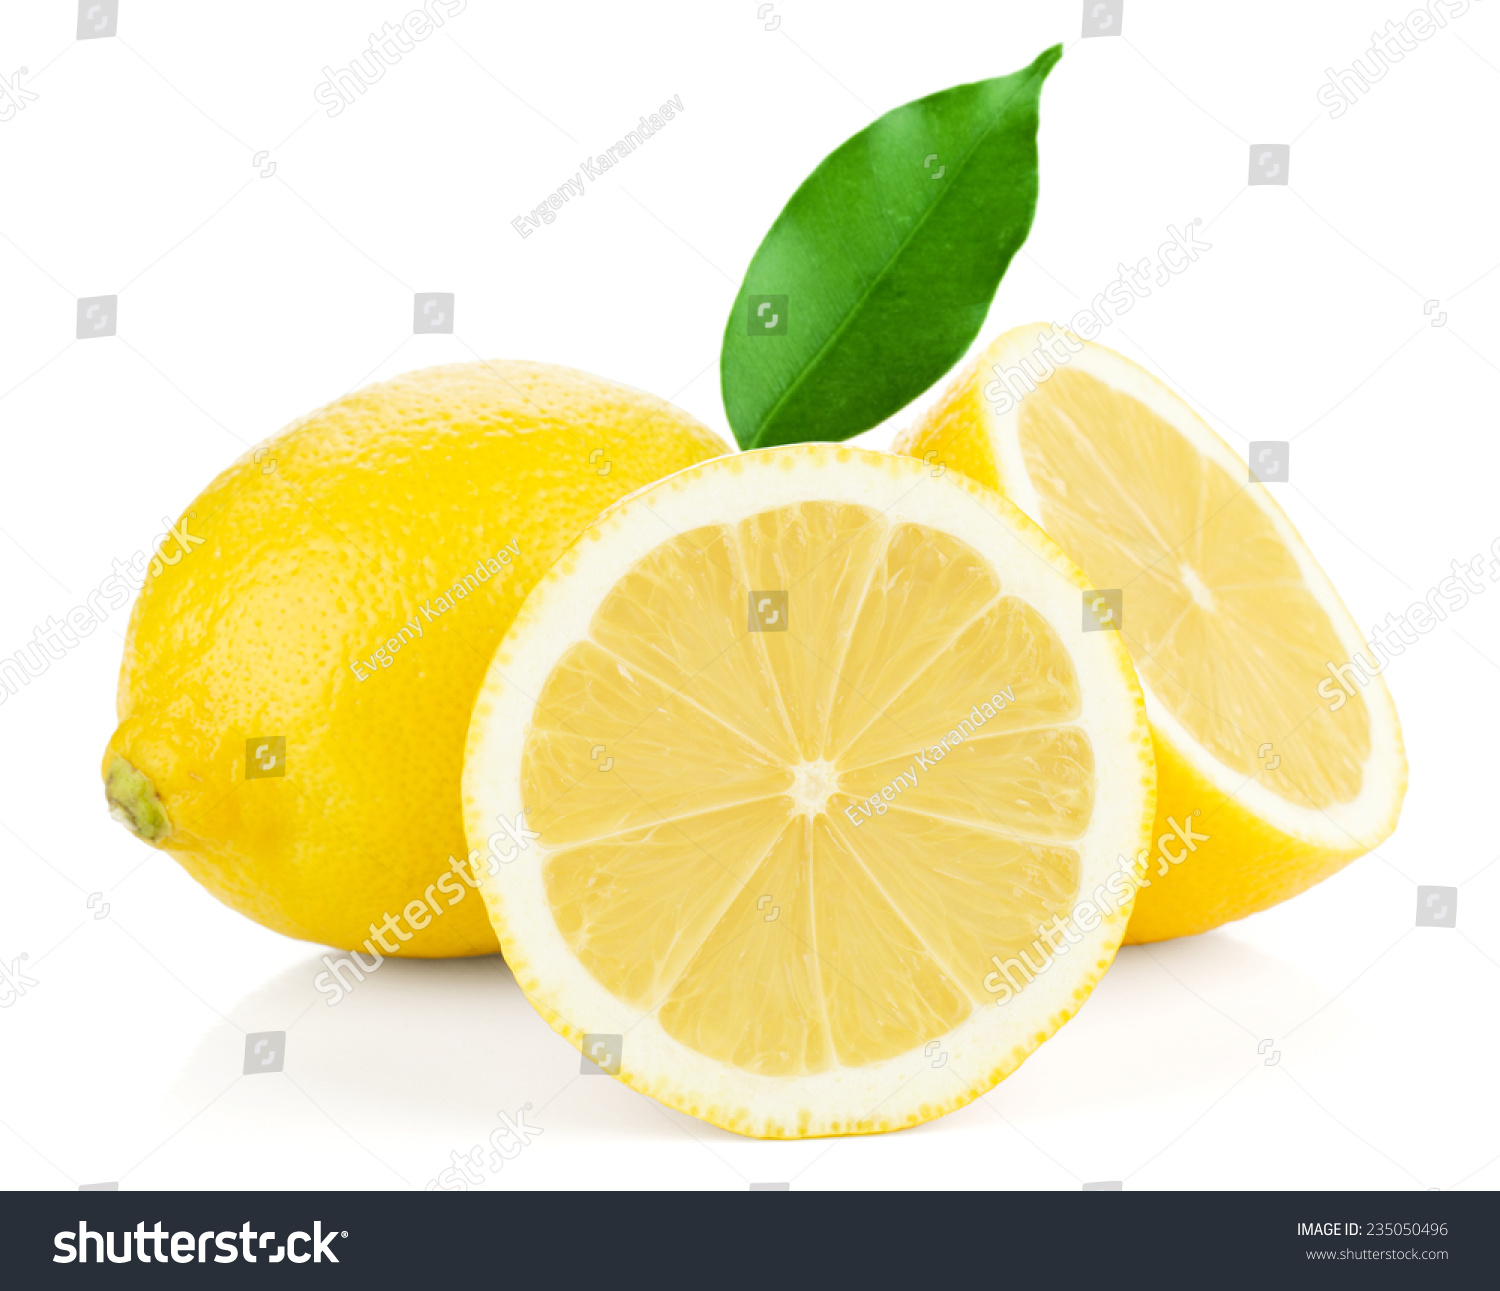 Ripe lemons. Isolated on white background #235050496